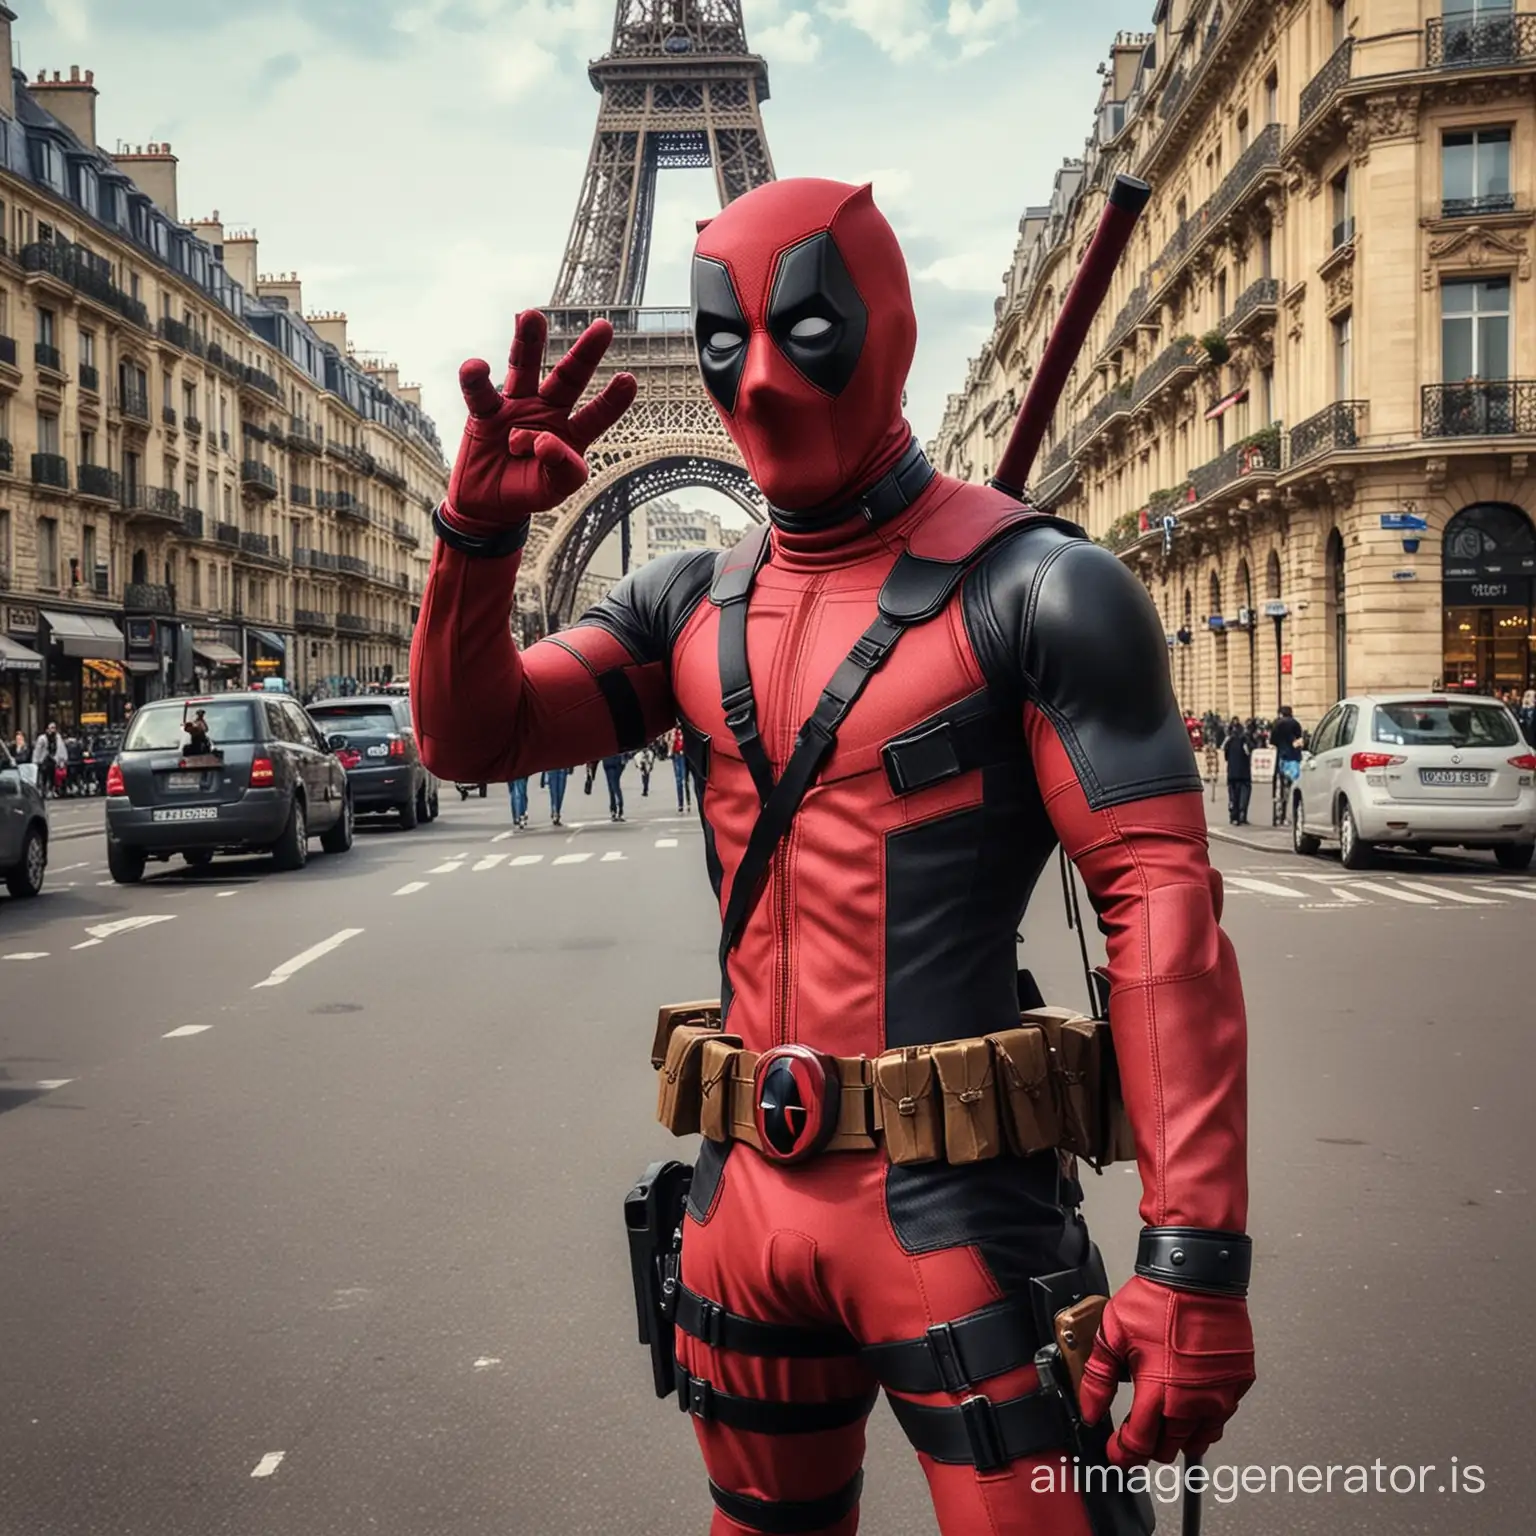 "Khatarnak Creativity: PowerPoint Mein Deadpool Ka Dhamaal!" In Paris selfie